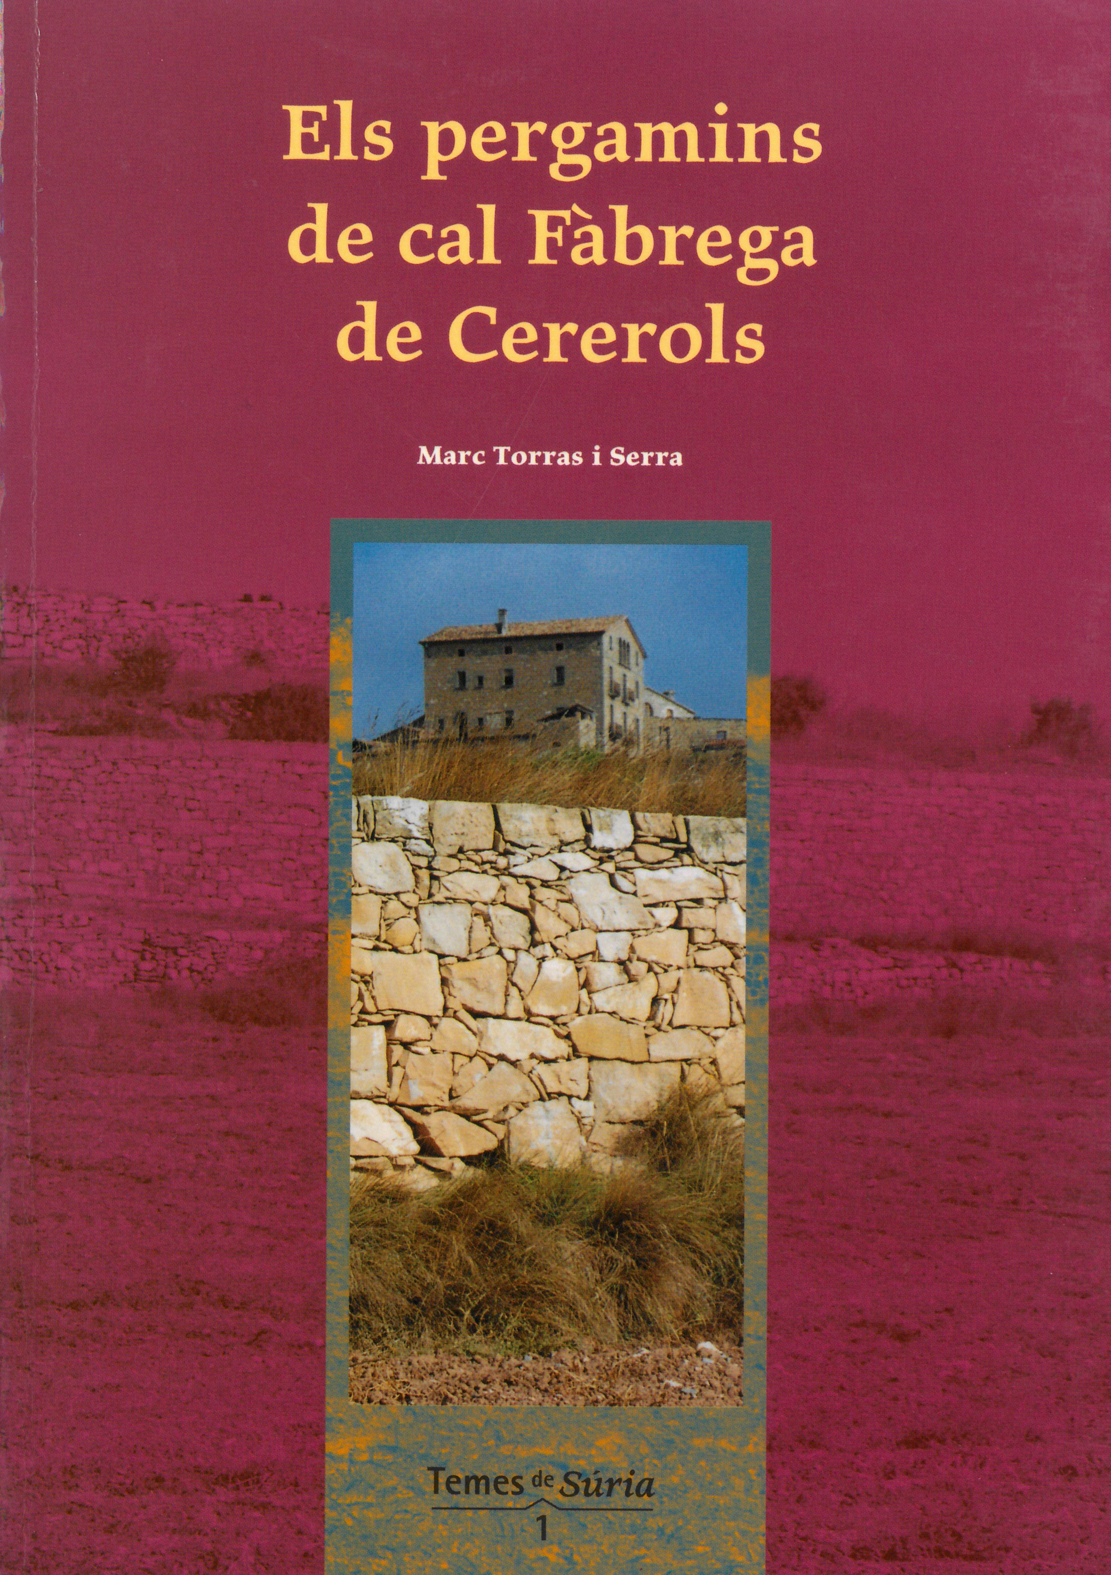 Any 2001 - Portada del llibre 'Els pergamins de cal FÃ brega de Cererols' de Marc Torras i Serra.